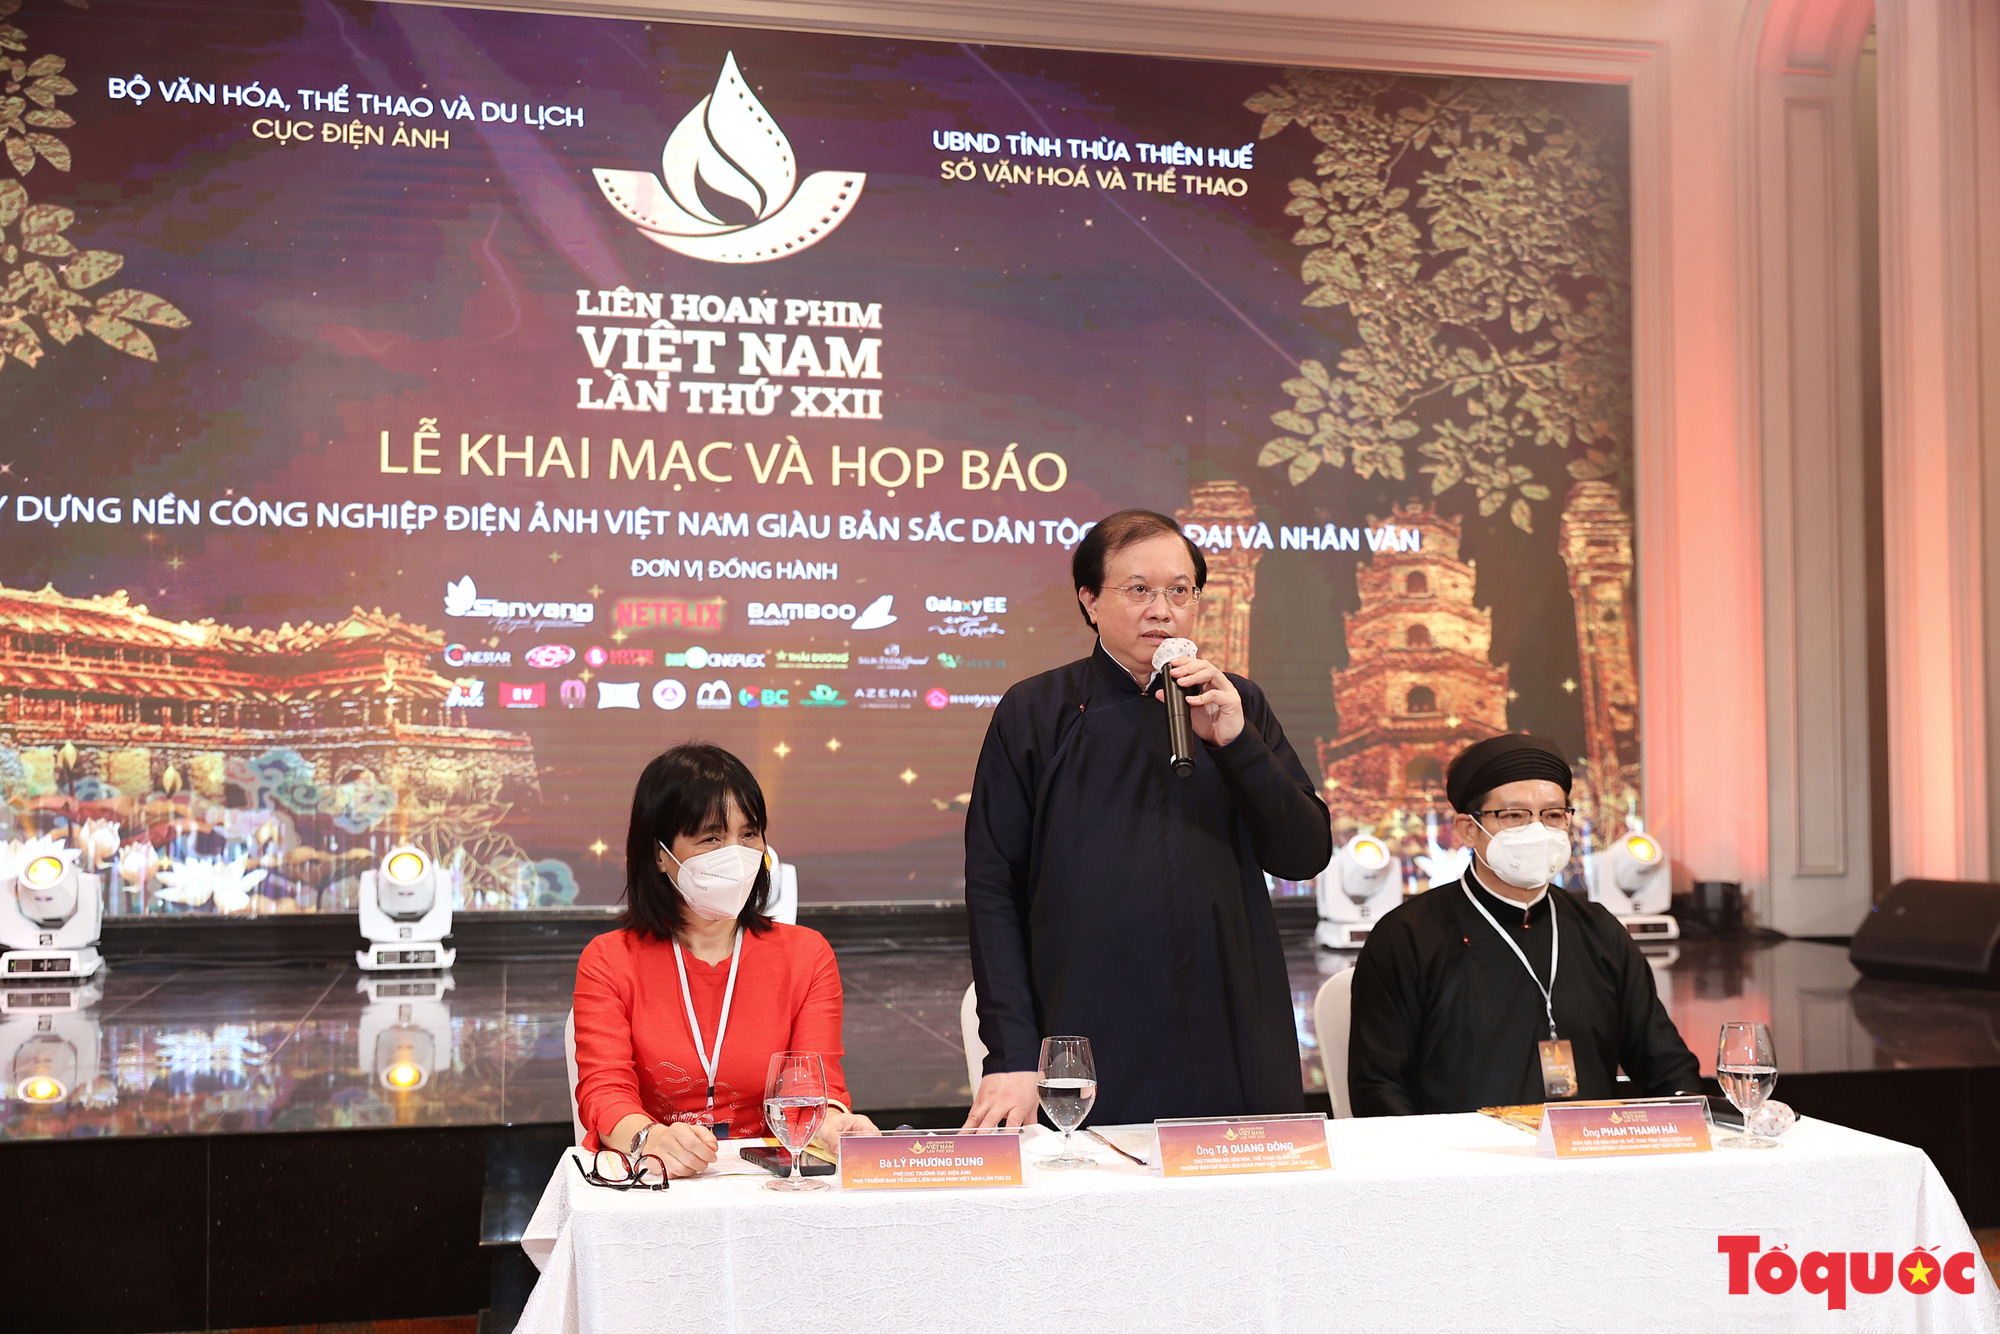 Toàn cảnh Lễ Khai mạc Liên hoan phim Việt Nam lần thứ XXII tại Tp Huế - Ảnh 9.